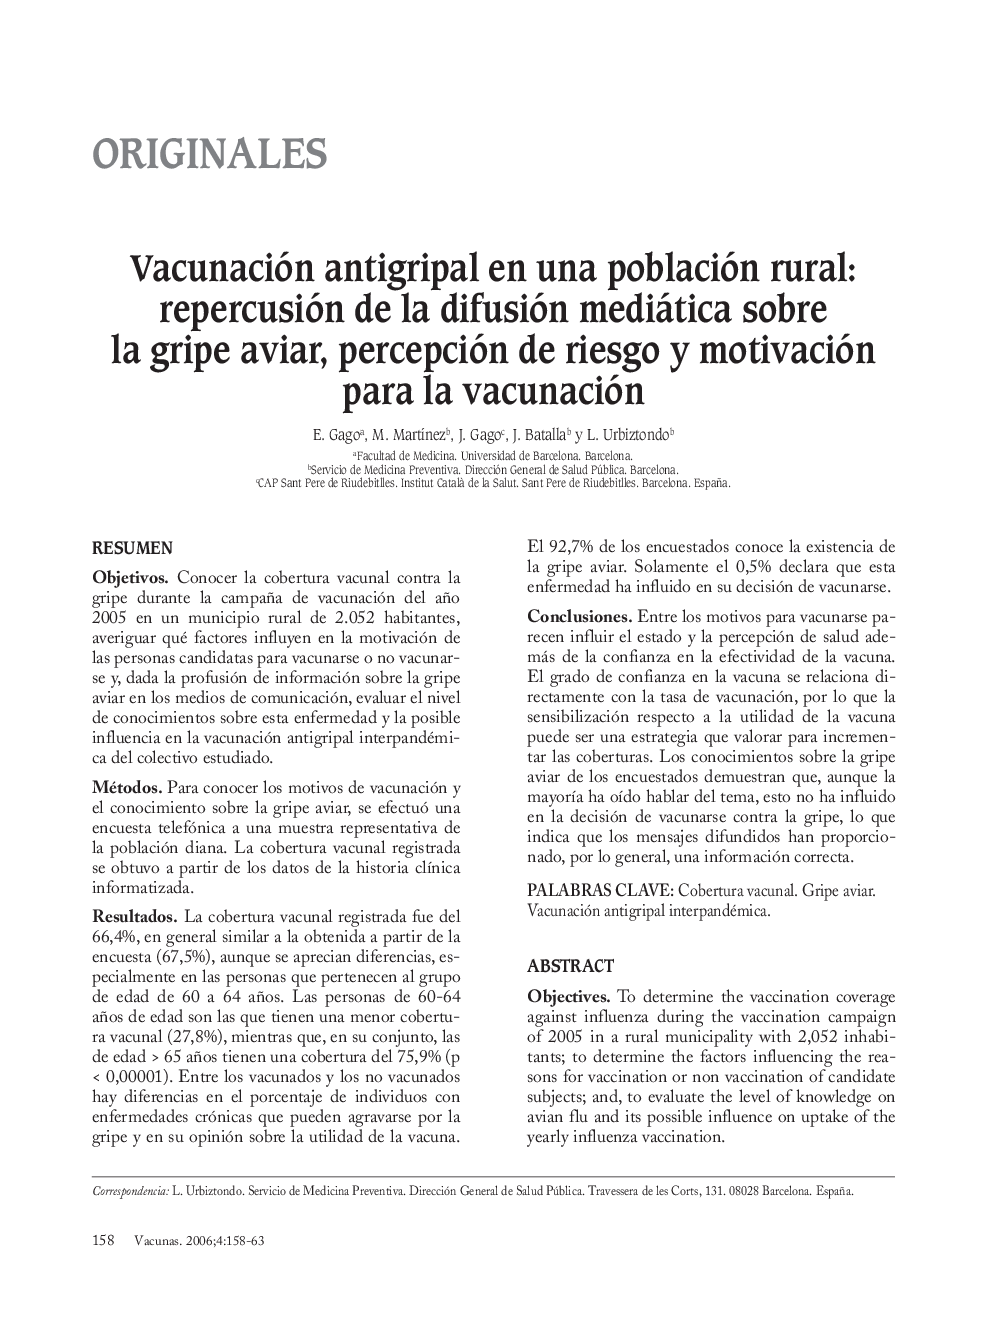 Vacunación antigripal en una población rural: repercusión de la difusión mediática sobre la gripe aviar, percepción de riesgo y motivación para la vacunación